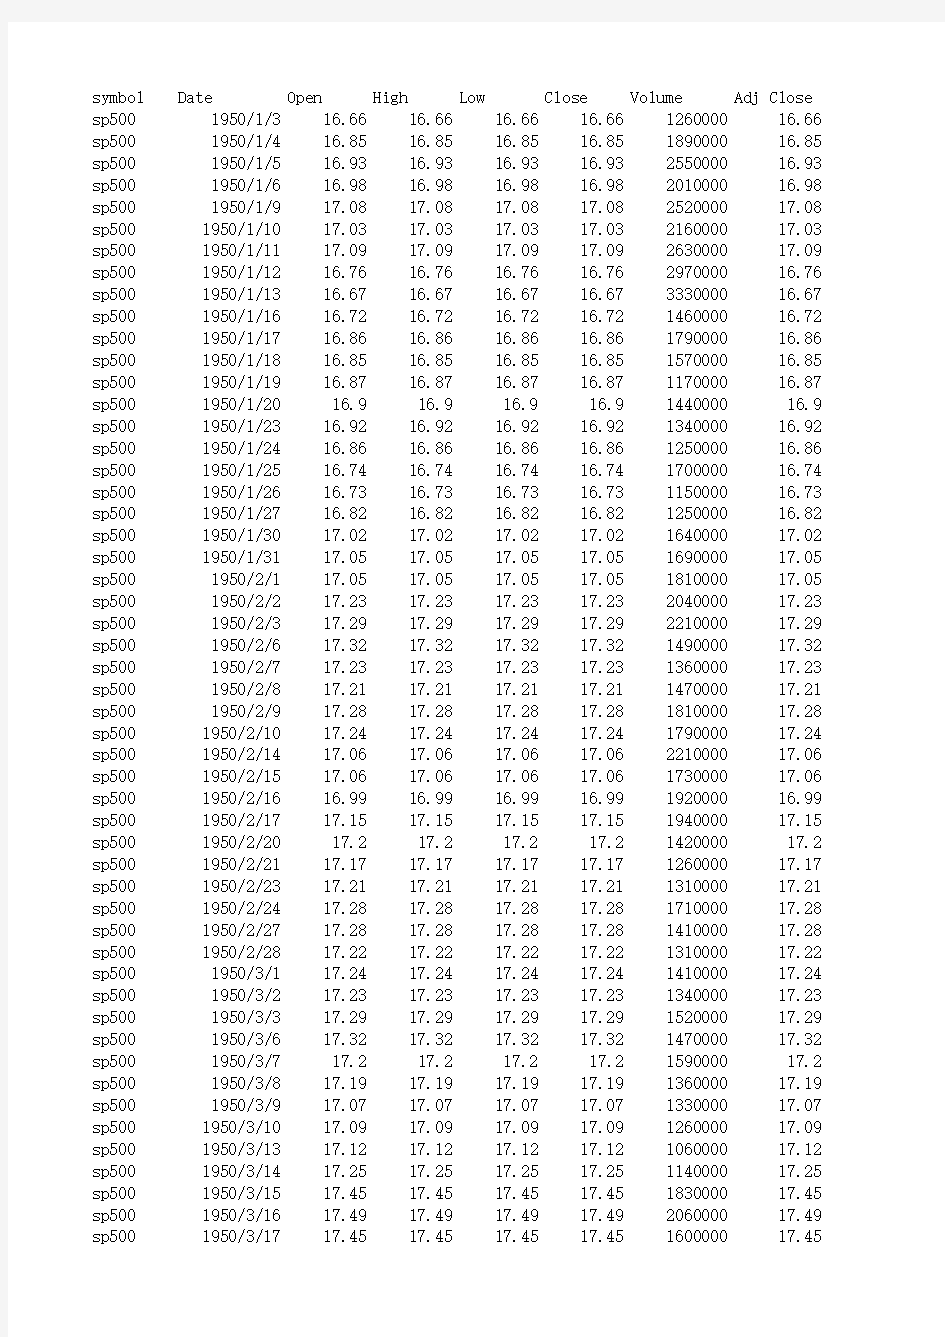 标普500指数历史数据(1950-2015)